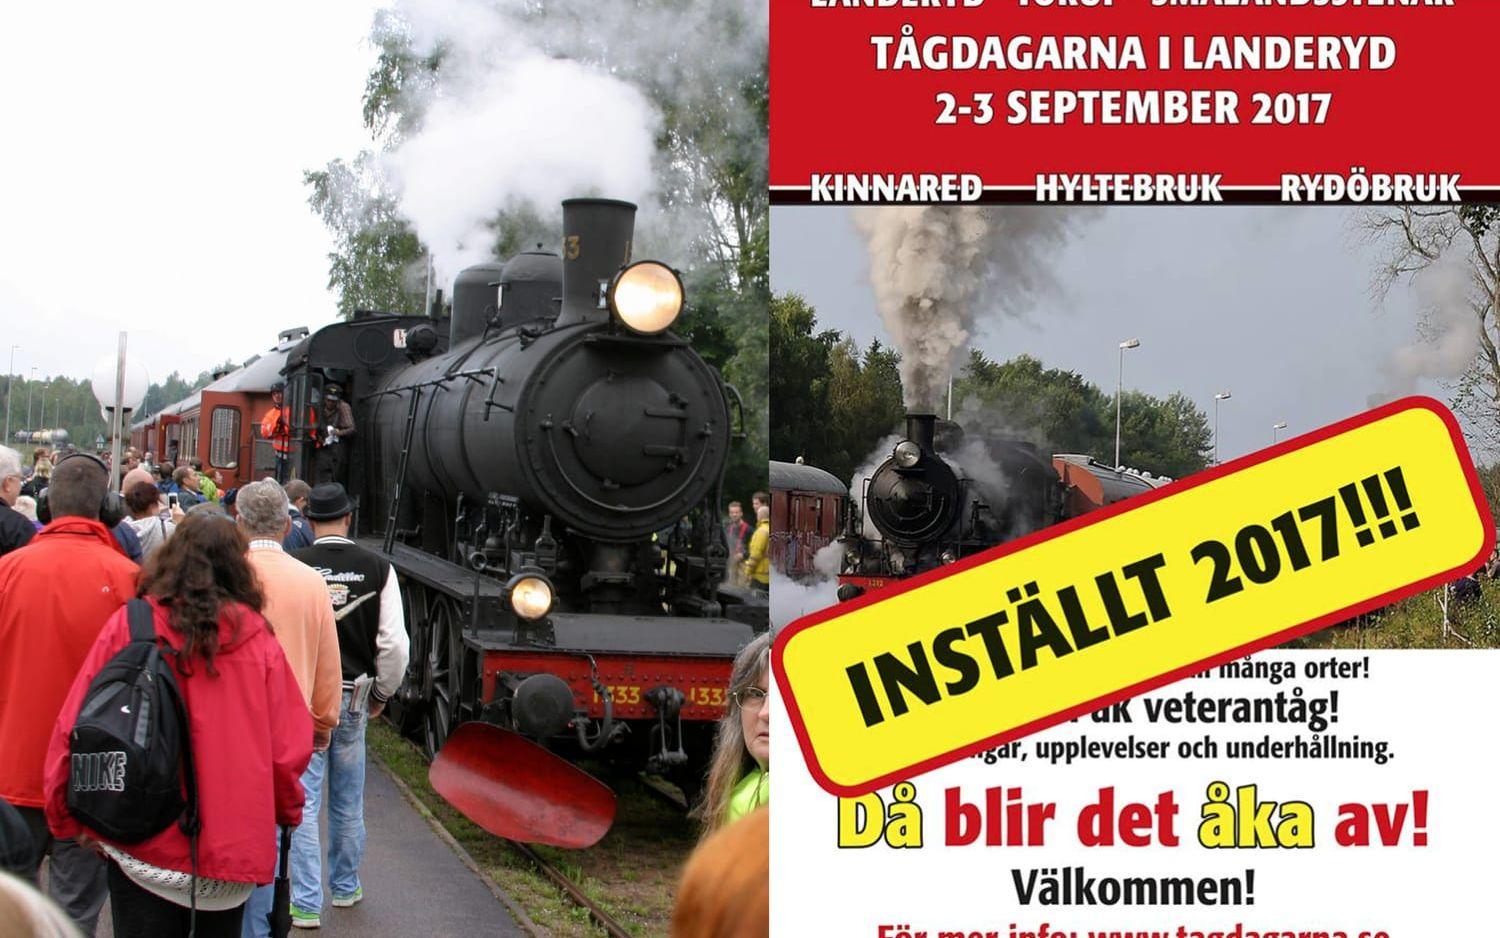 Tågdagarna, som är Sveriges största årligen återkommande veterantågsevenemang, ställs in i år. Det meddelar Landeryds järnvägsmuseum på sin hemsida och Facebook-sida. Bild: HP Arkiv, Landeryds järnvägsmuseum